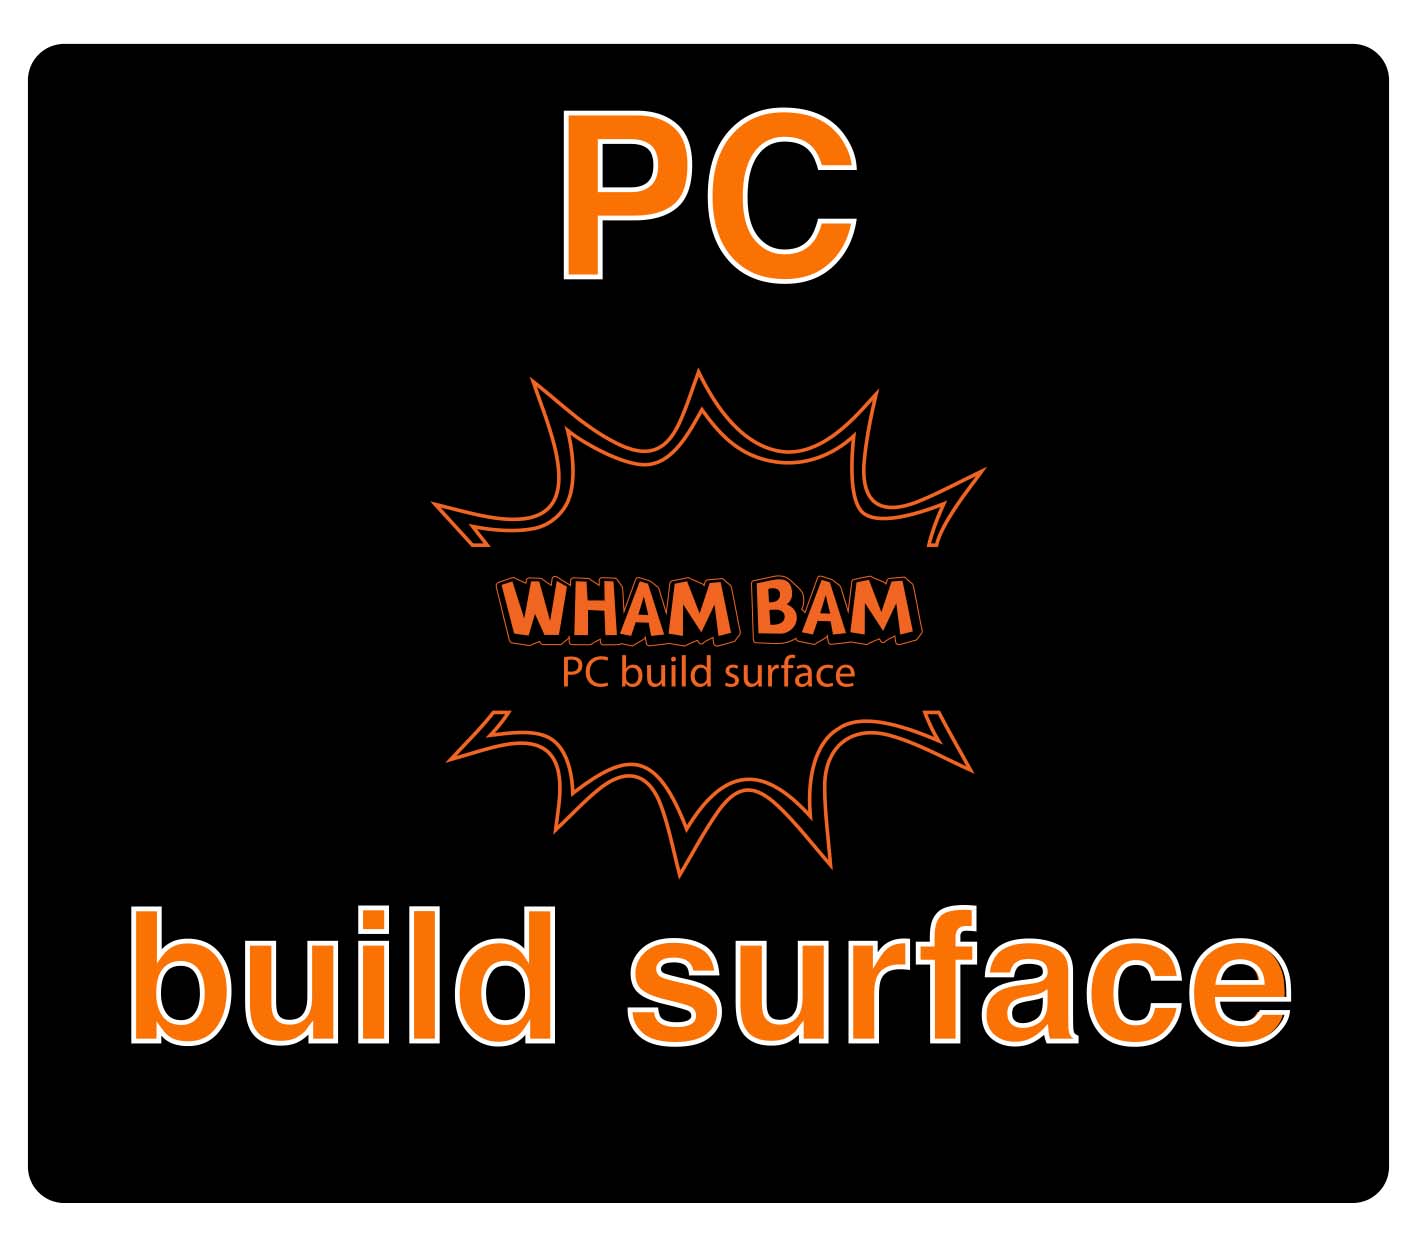 PC Build Surface (Classic Black) - 254 x 203 - MakerGear M2 & M3, CraftBot Plus Pro